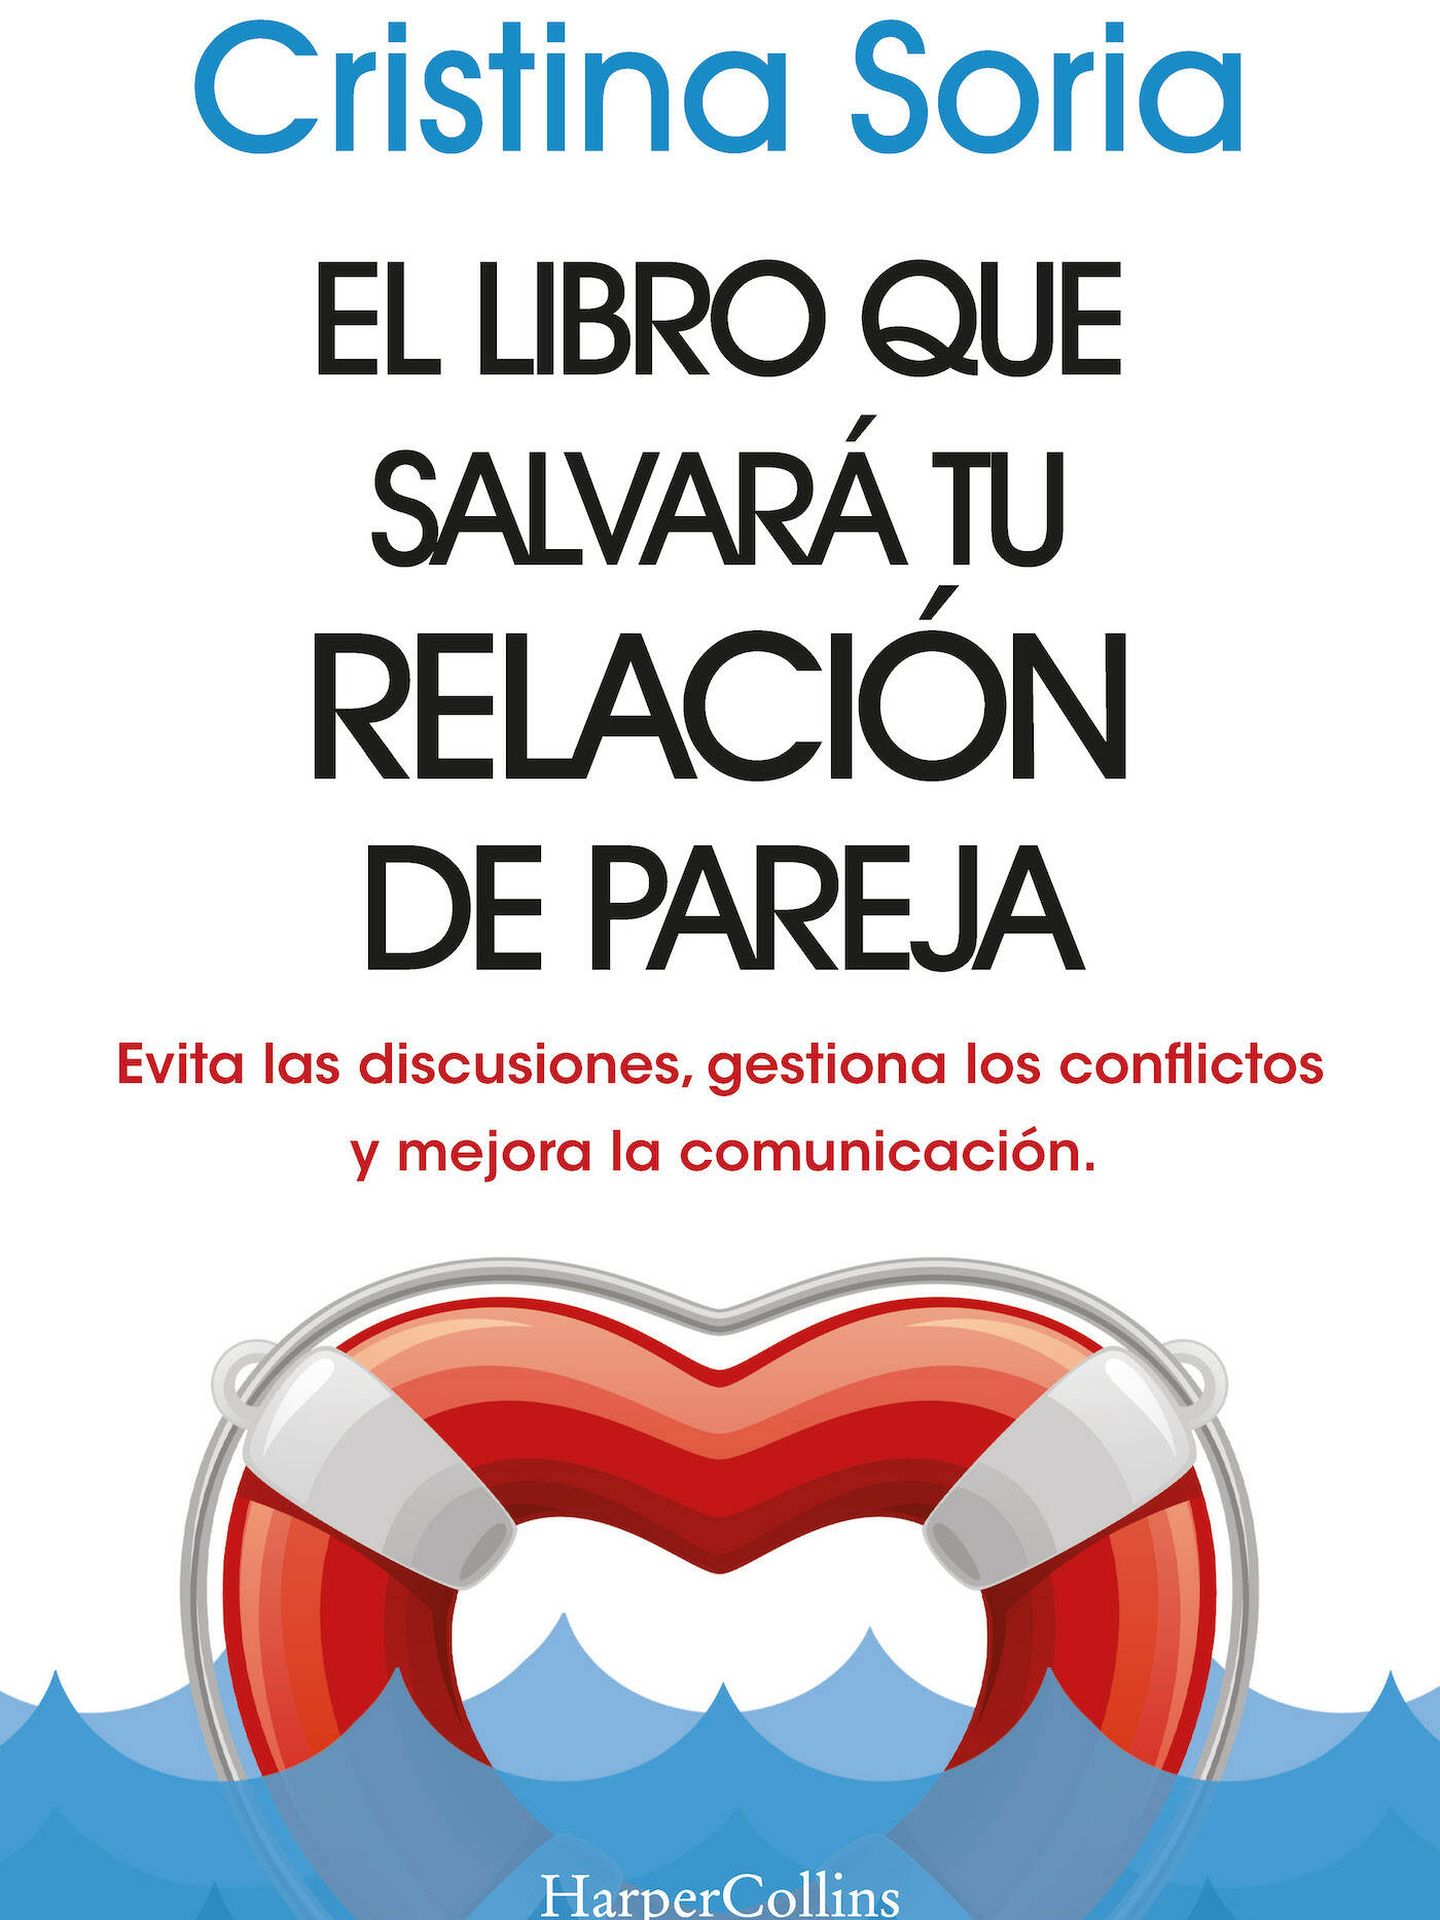 El libro que salvará tu relación de pareja de Cristina Soria. (Cortesía)